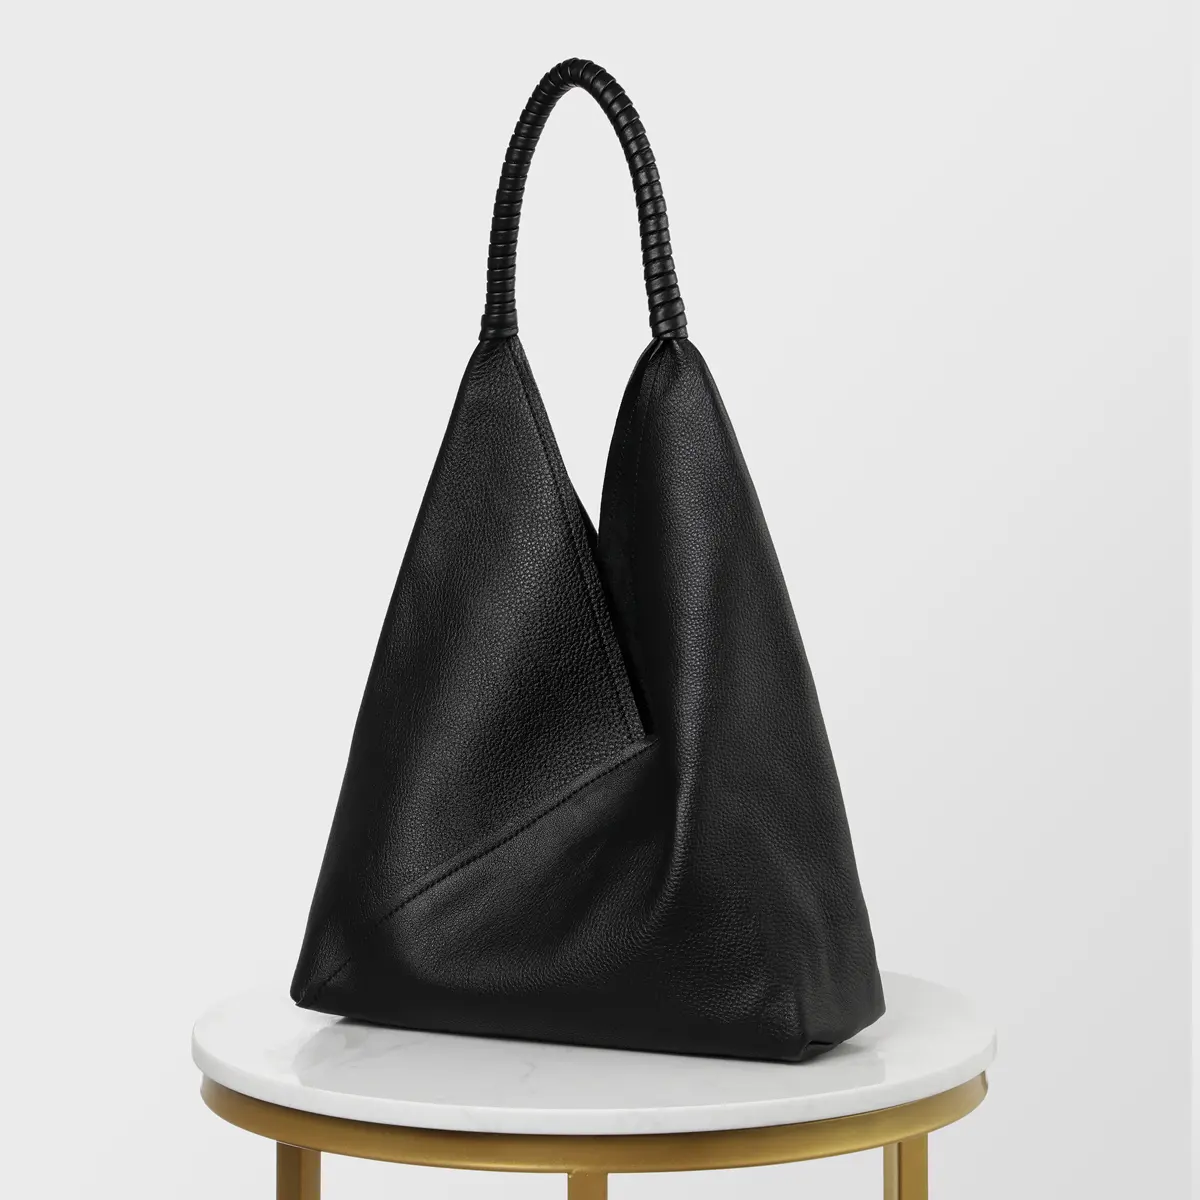 Хит продаж 2021 г., итальянская брендовая наплечная сумка-хобо, кожаная сумка, мягкие женские сумки для покупок